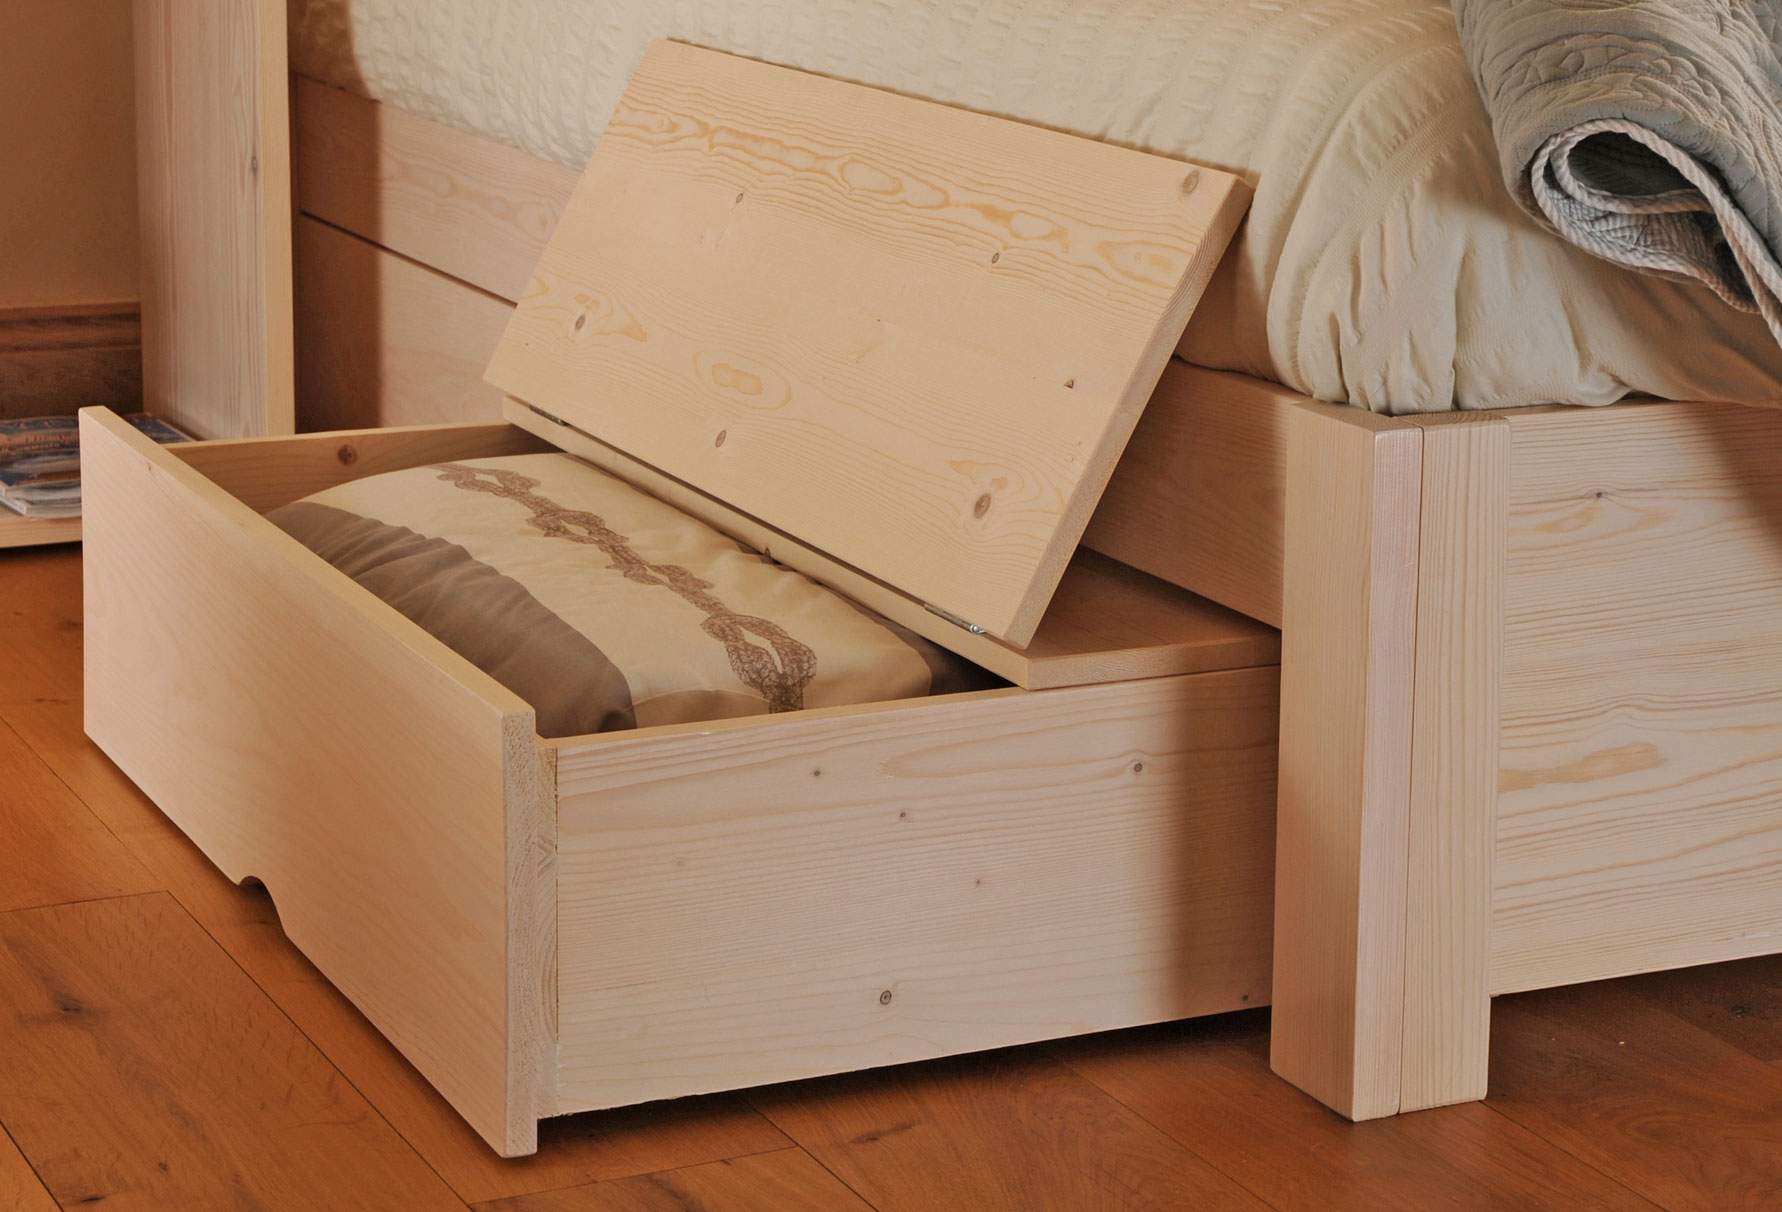 Как сделать ящик для кровати — особенности конструкции | онлайн-журнал о ремонте и дизайне